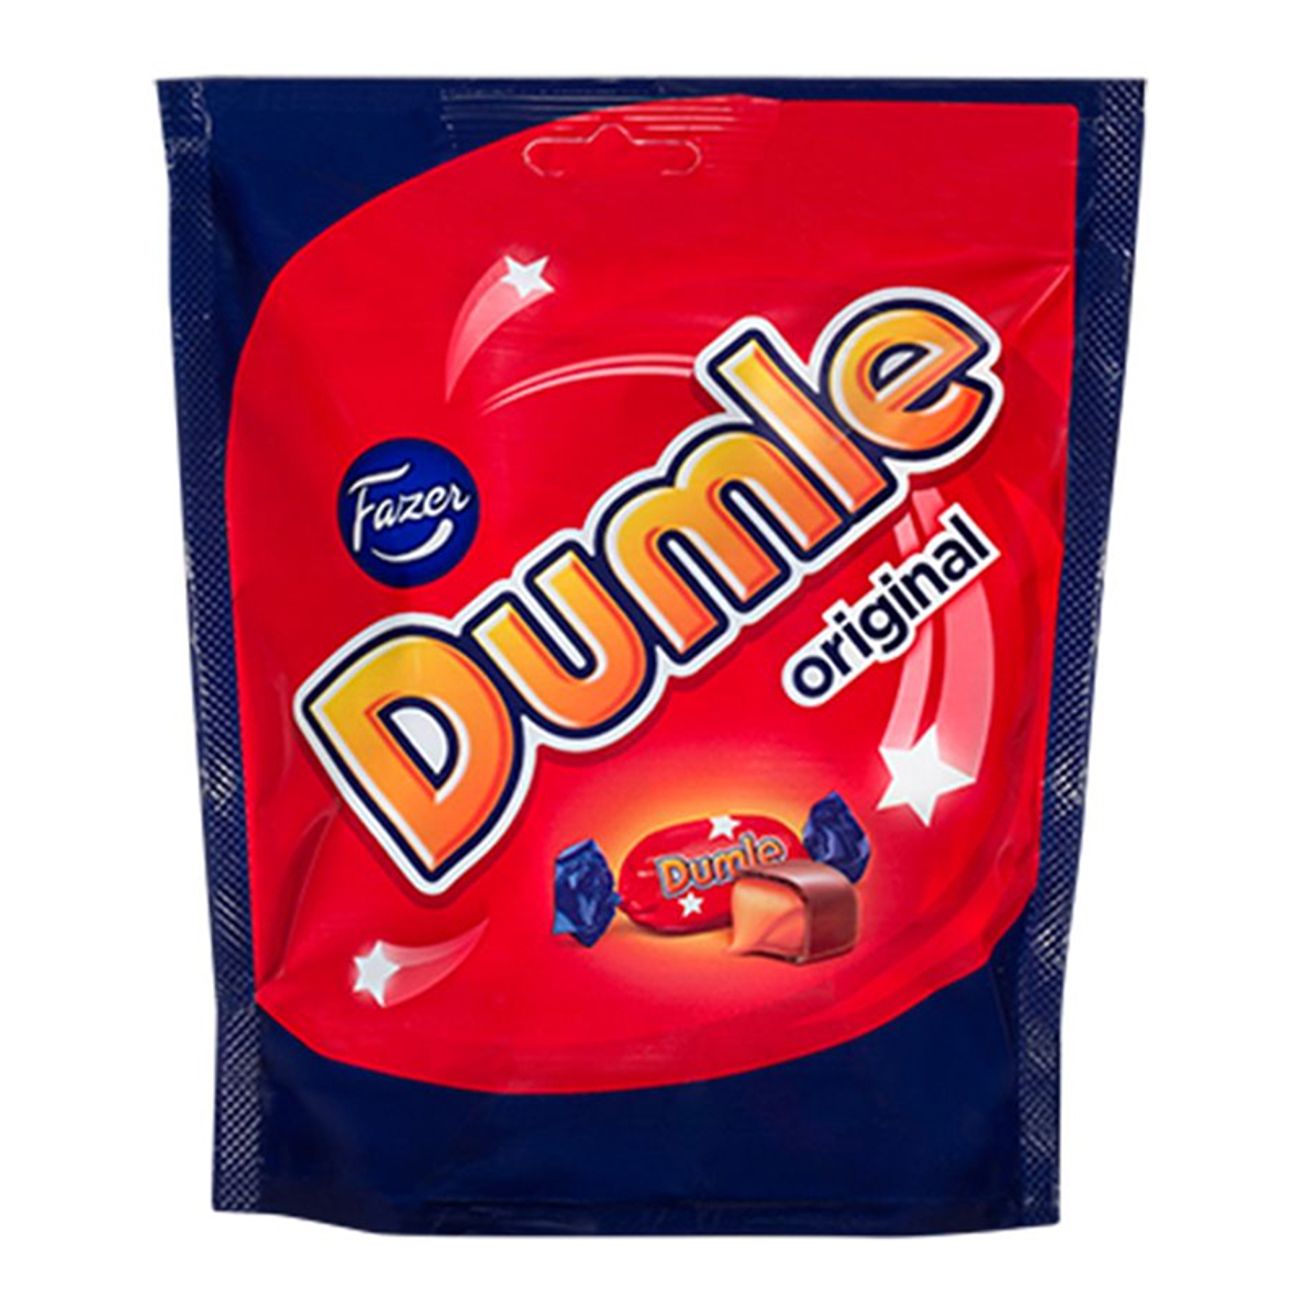 dumle-original2-3